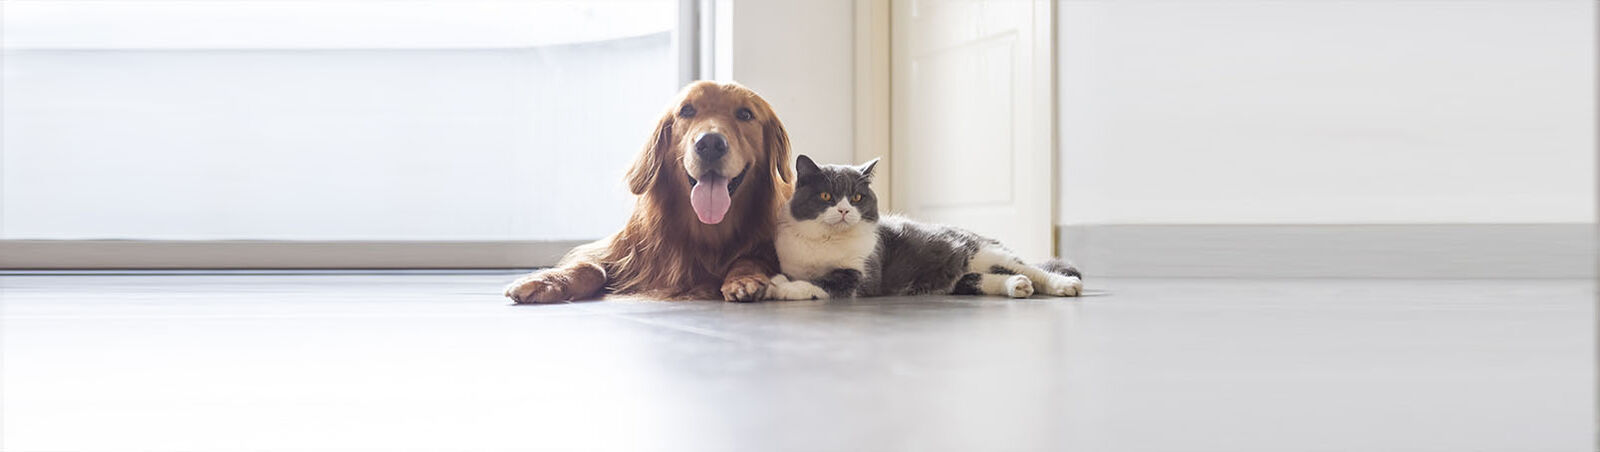 Ein Hund und eine Katze liegen nebeneinander auf dem Boden.